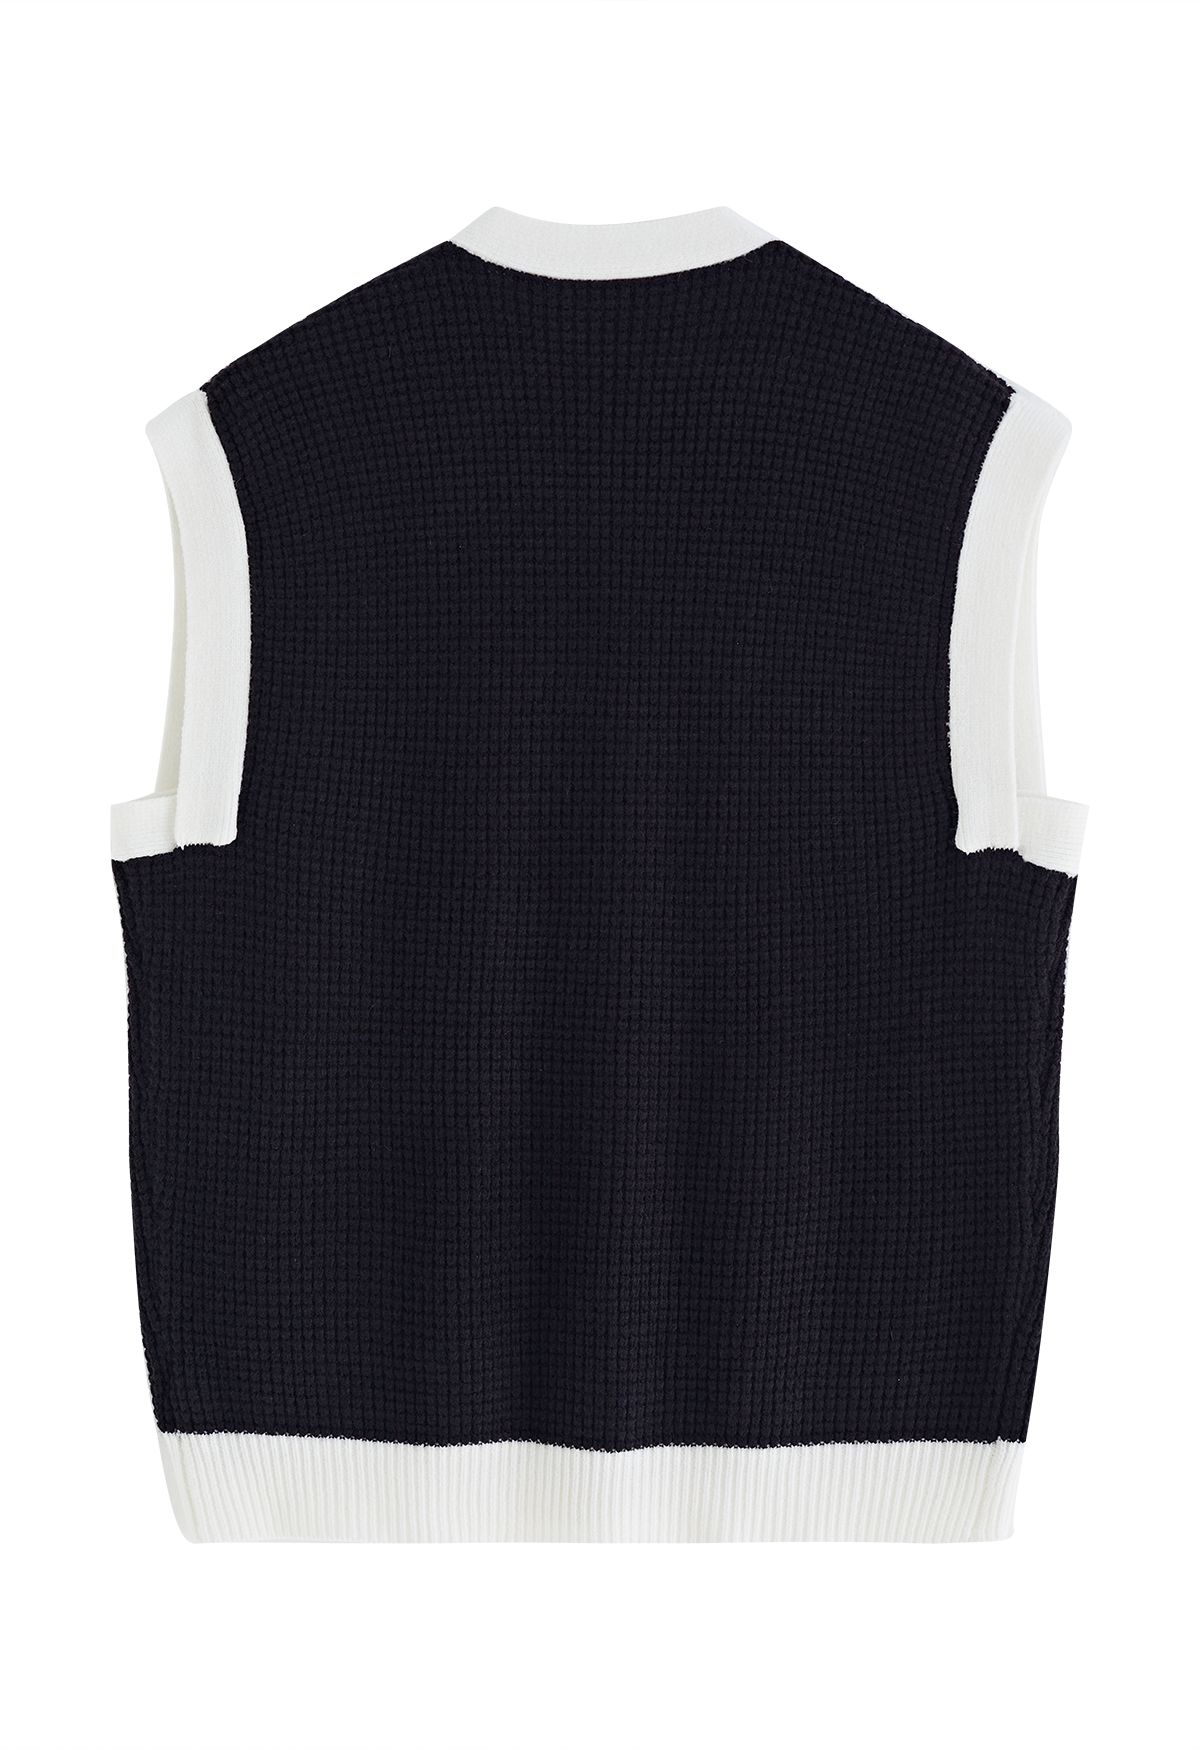 Contrast Edge Button Embellished Knit Vest in Black